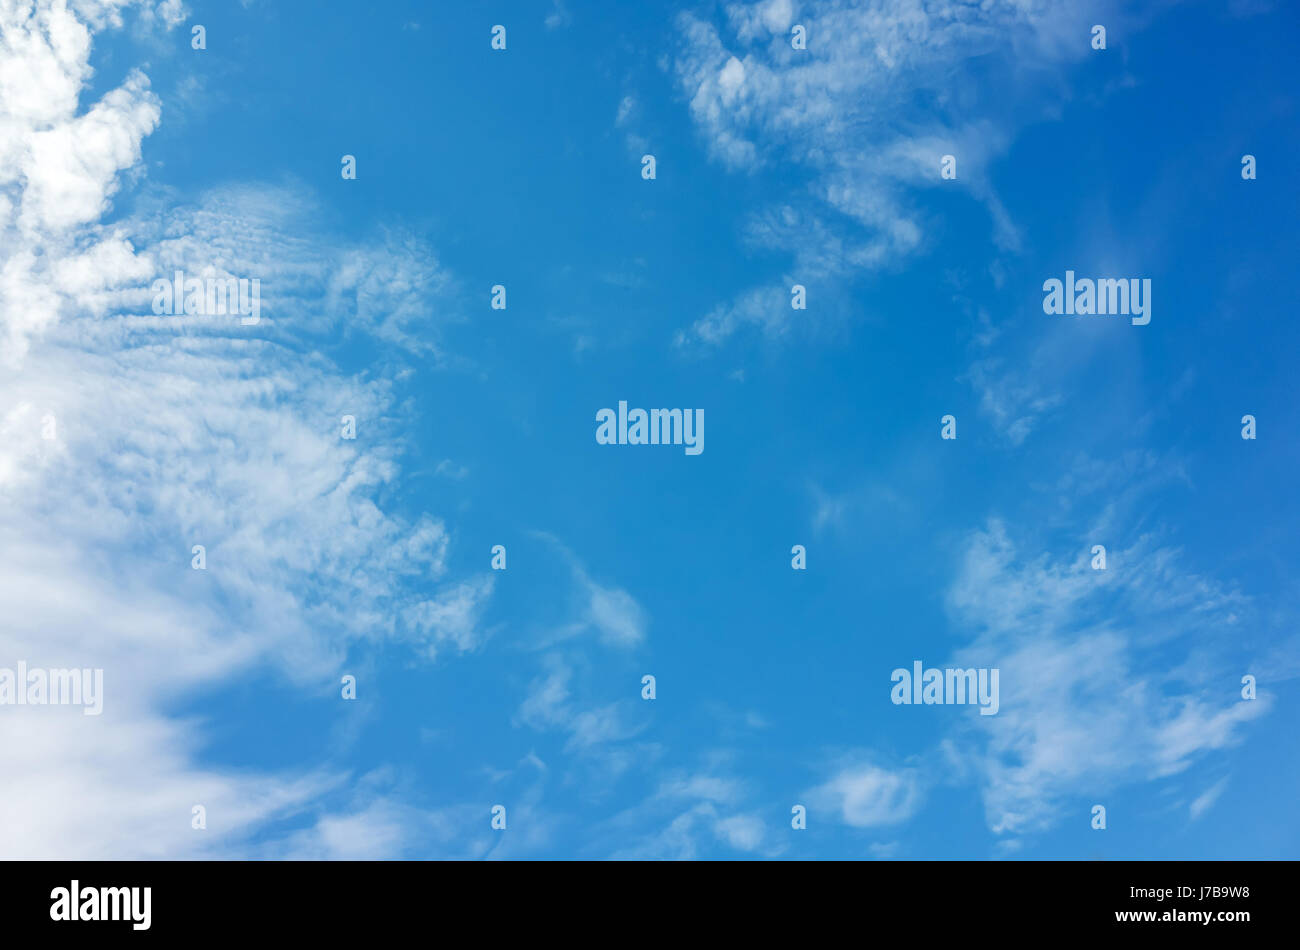 Blauer Himmel mit weißen Altocumulus und Cirrus-Wolken, natürliche Hintergrundtextur Foto Stockfoto